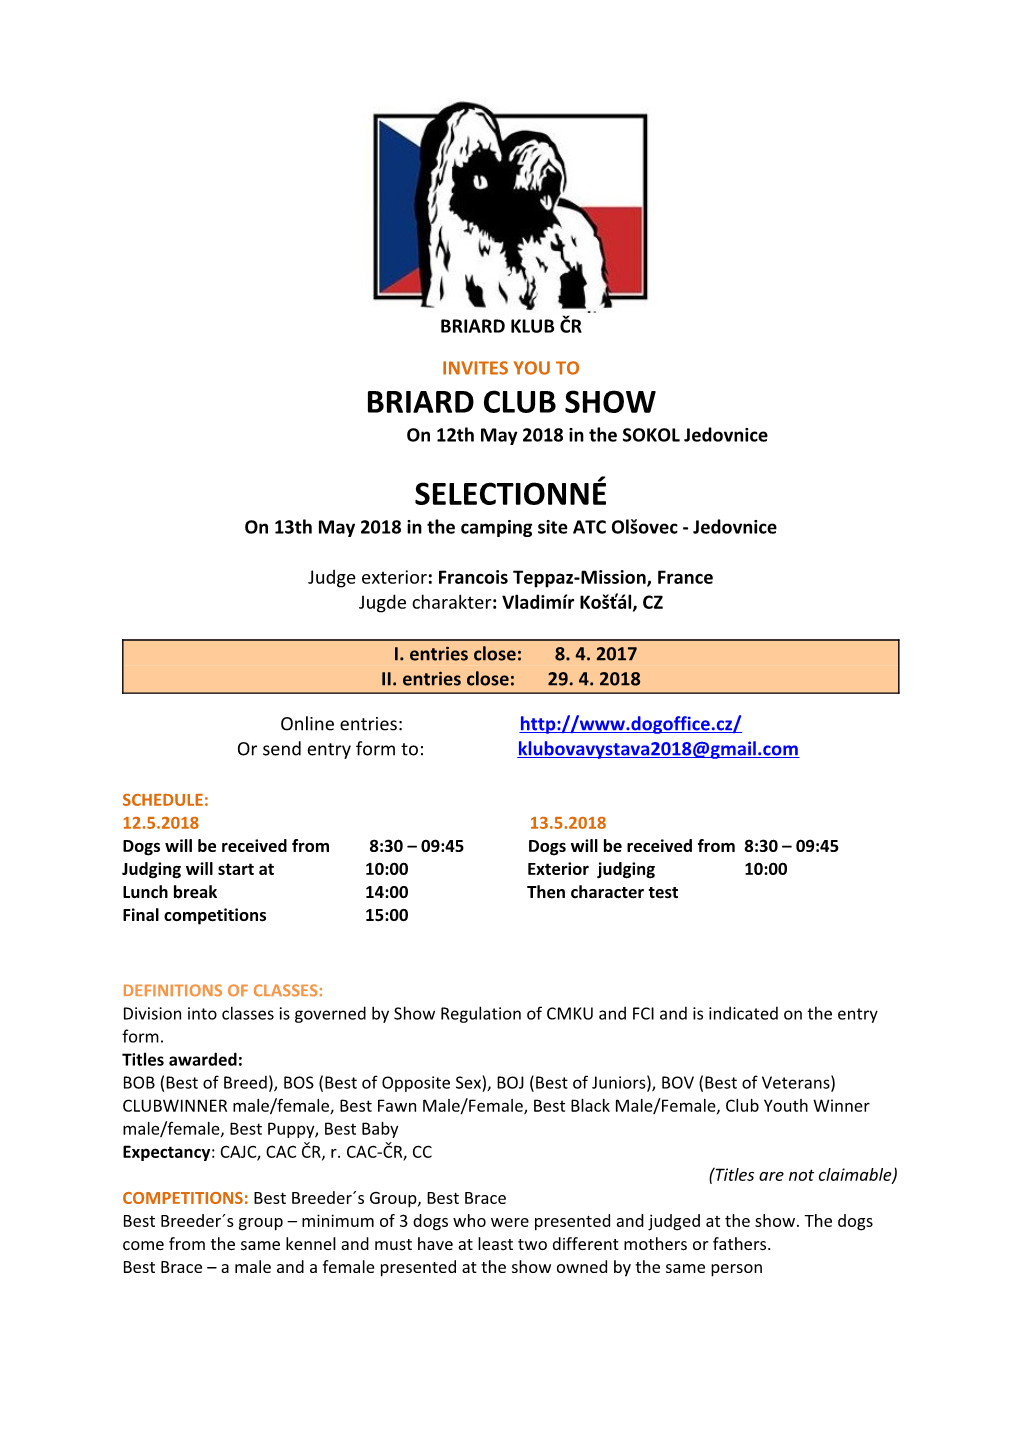 Briard Club Show